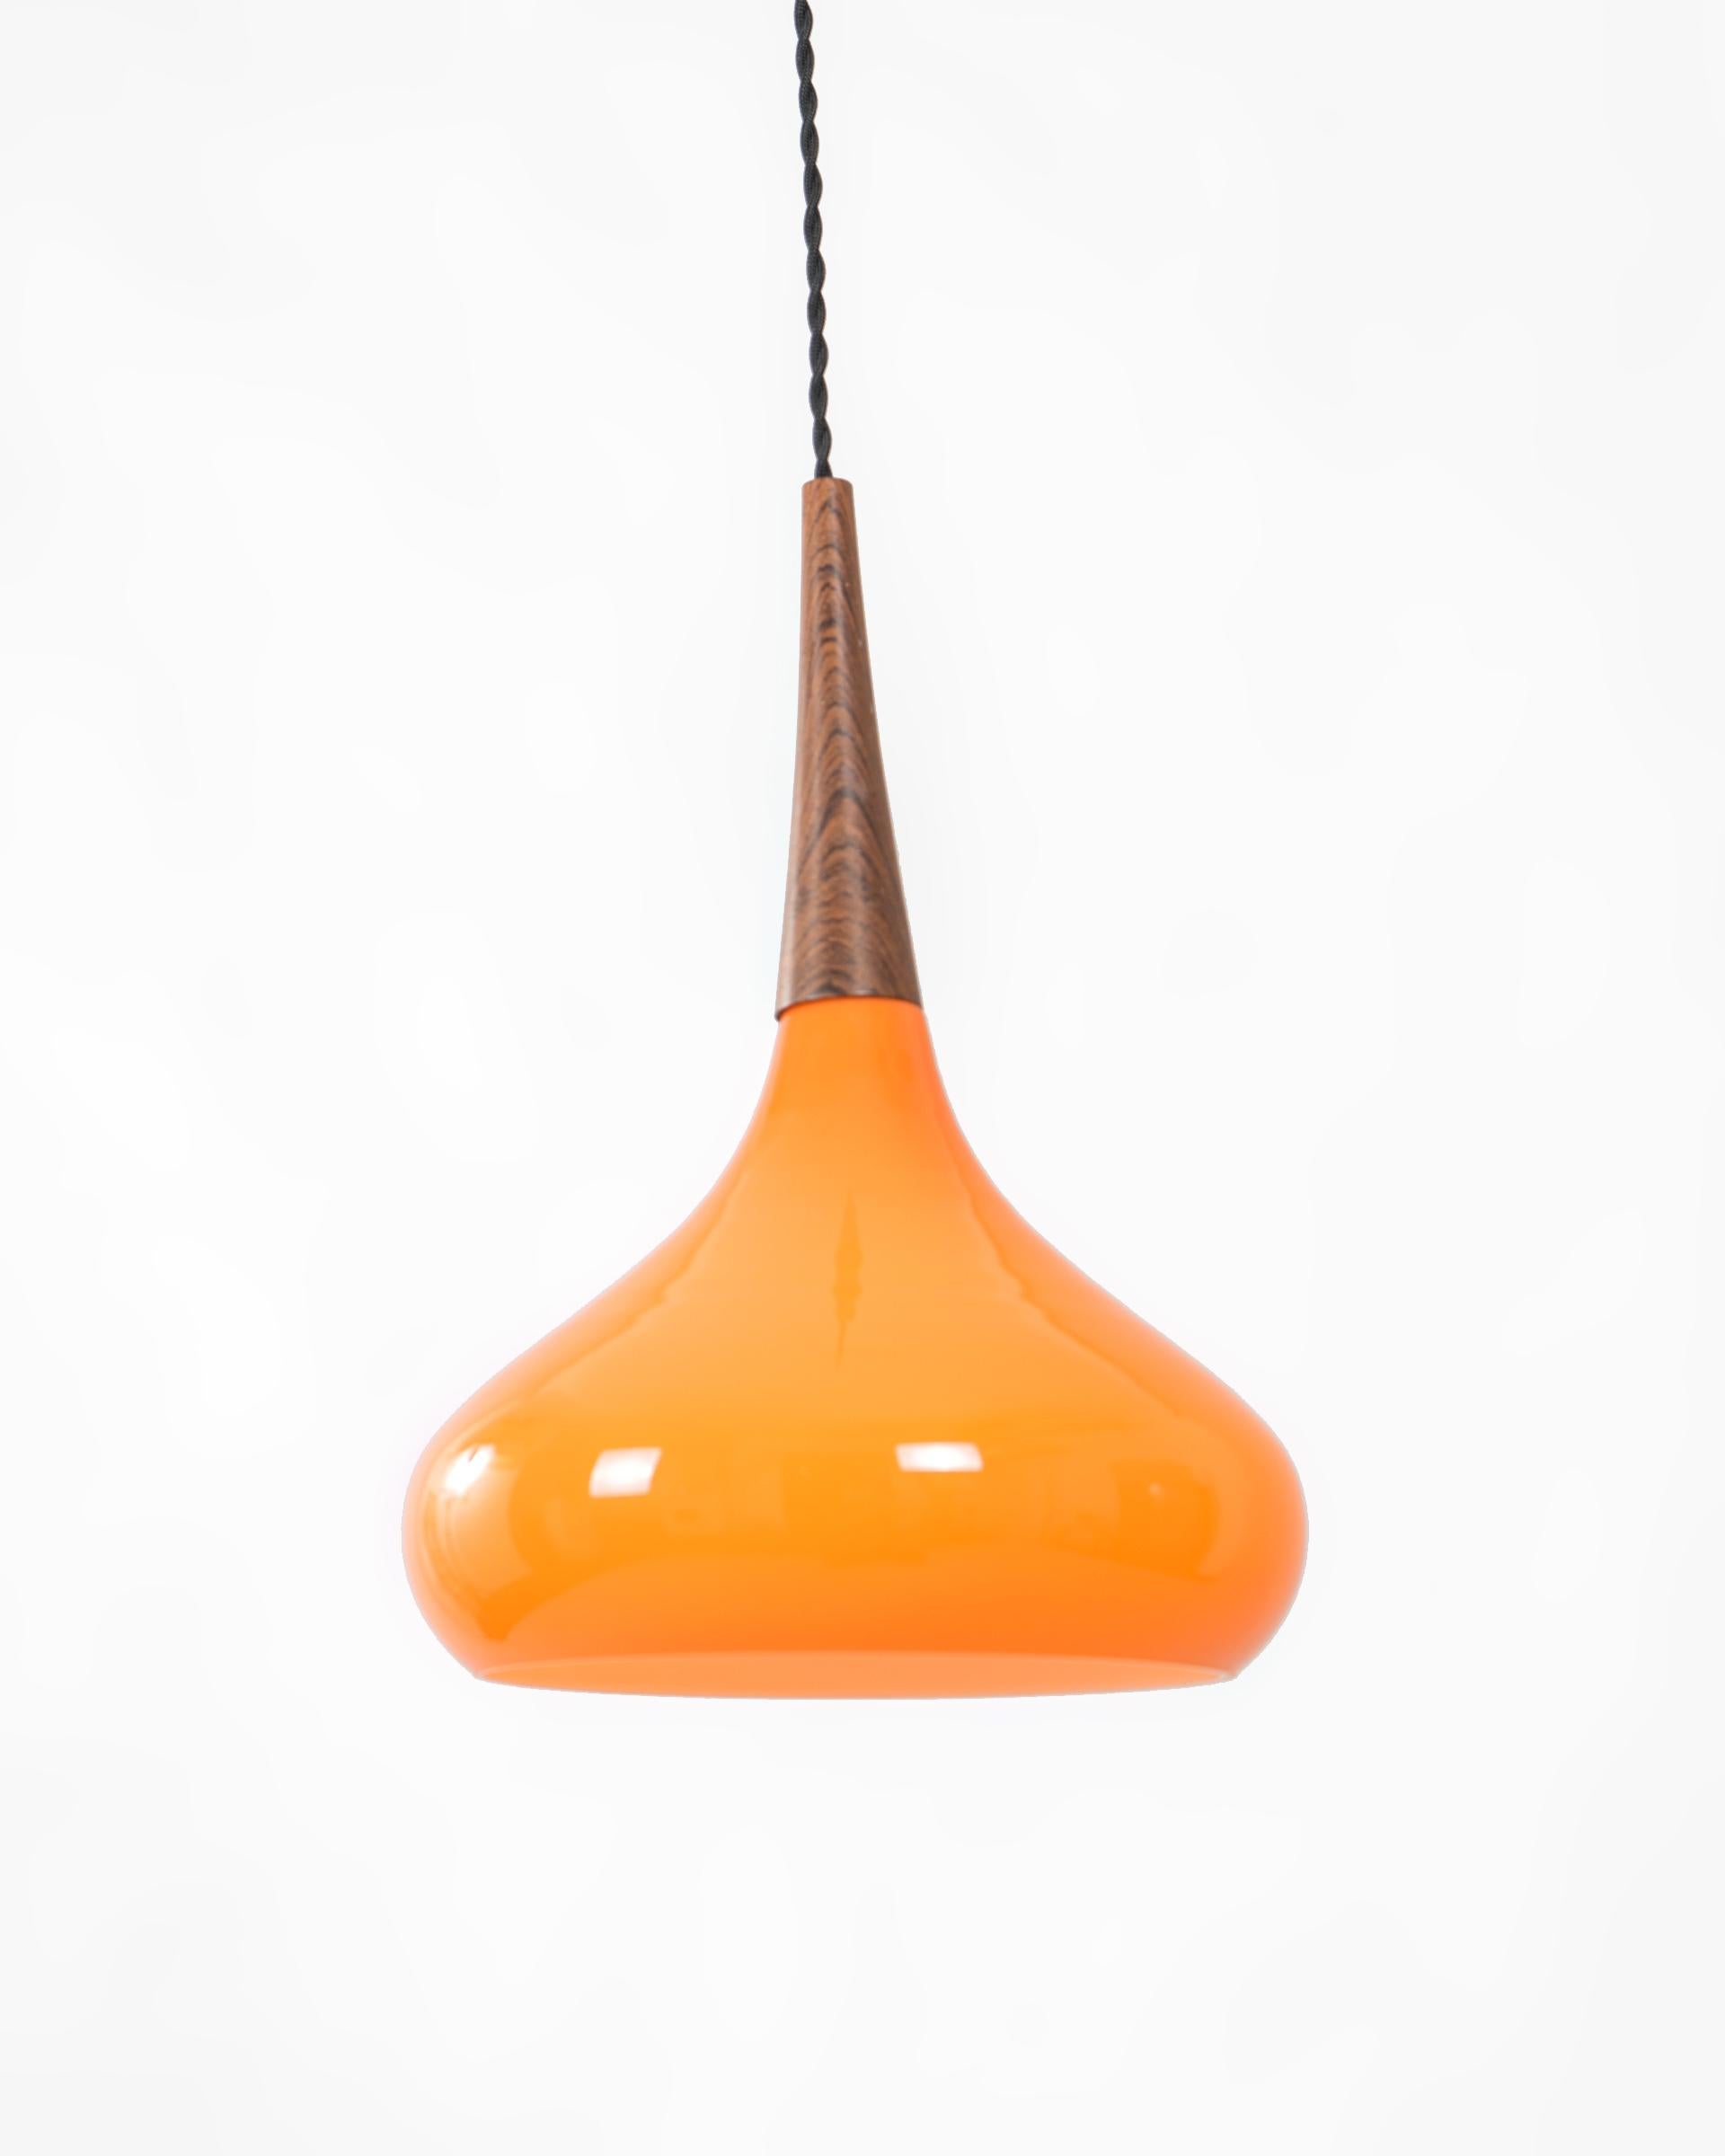 Lámpara de techo mid-century de cristal naranja con aplique en madera de teca. El cable original ha sido sustituido por un cable trenzado de cuerda de algodón negro.

